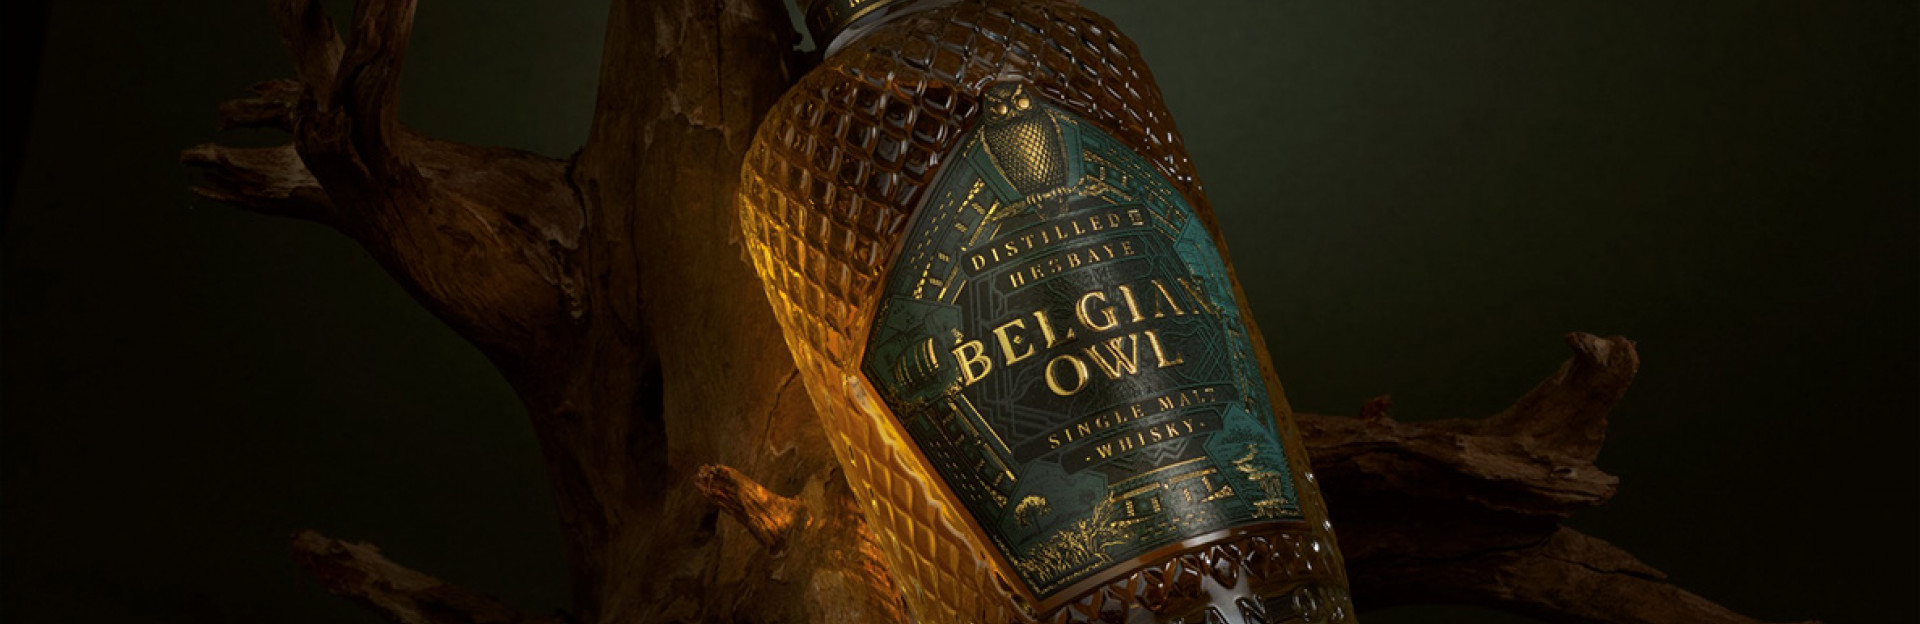 Belgian Owl Distillery и Seewines - част II